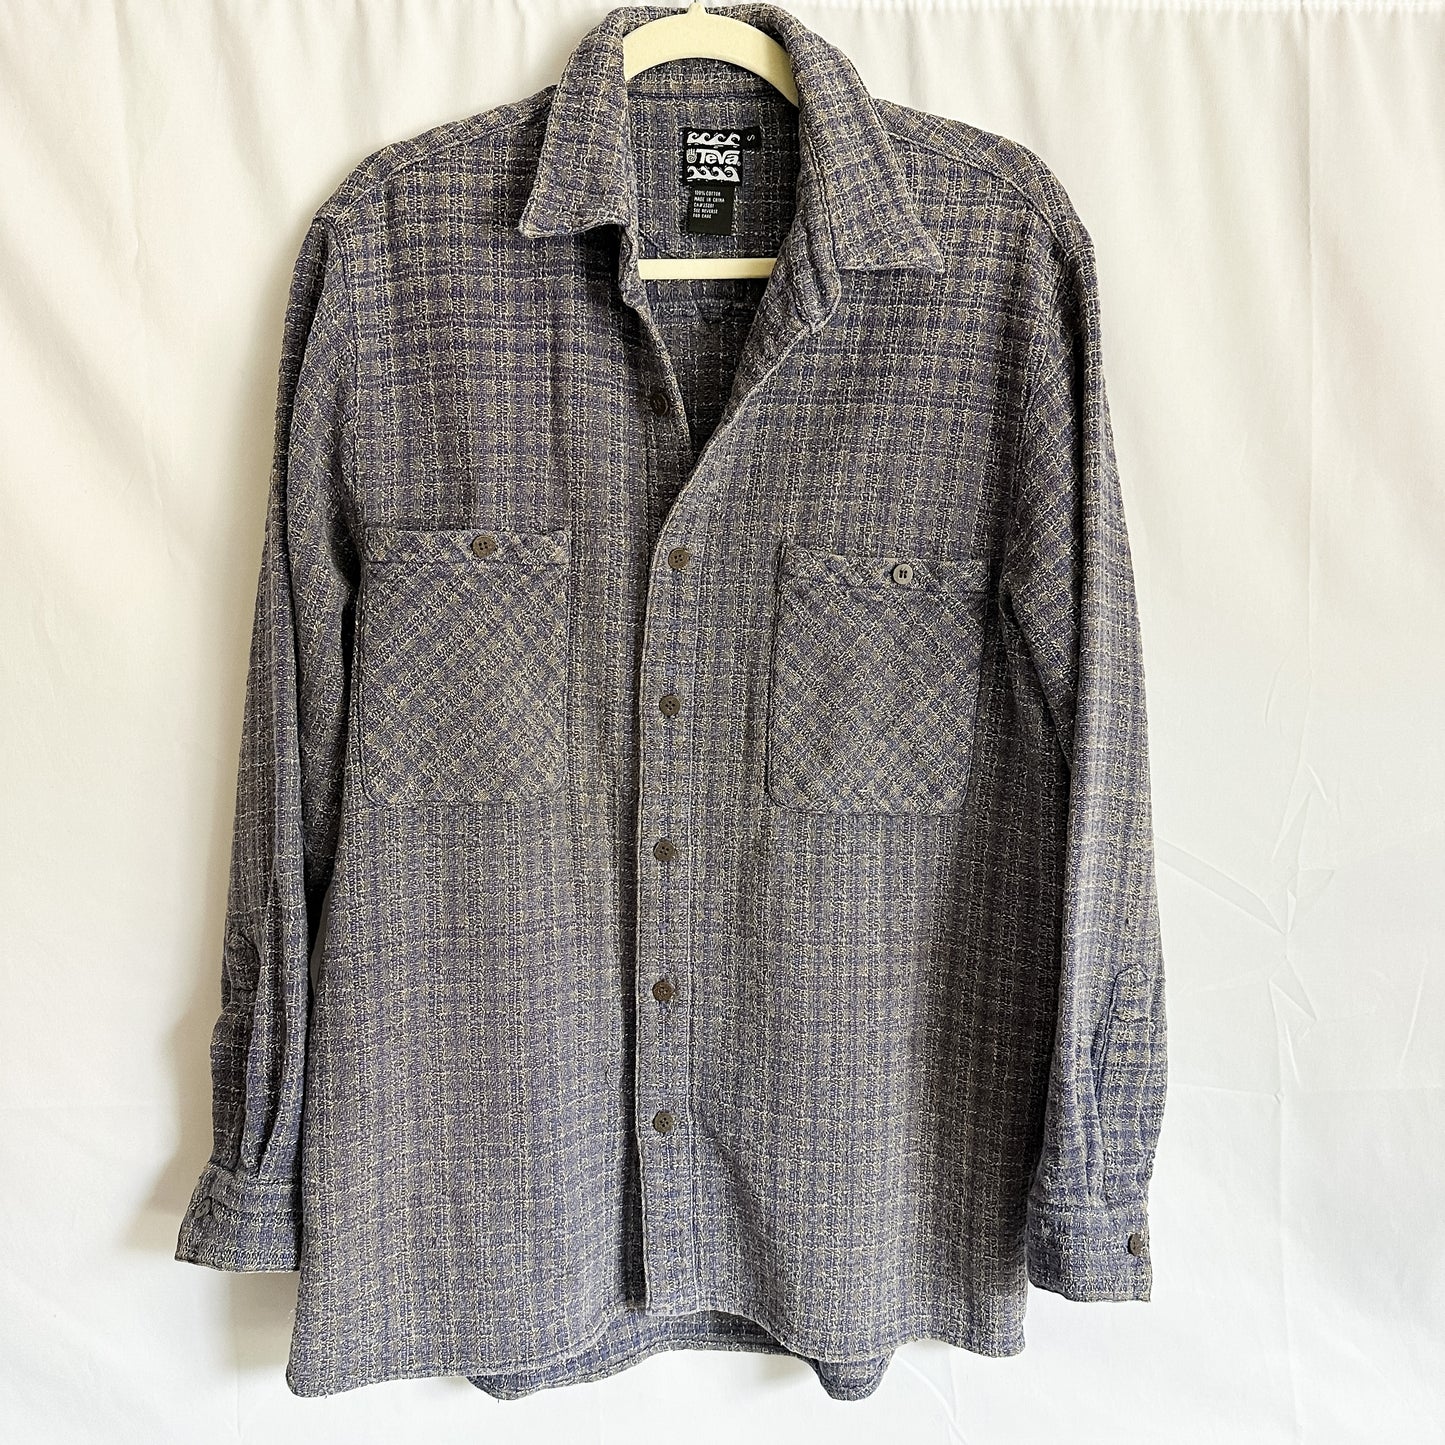 Cotton Purple/Tan Waffle Knit Shirt Jacket (fits S-M)